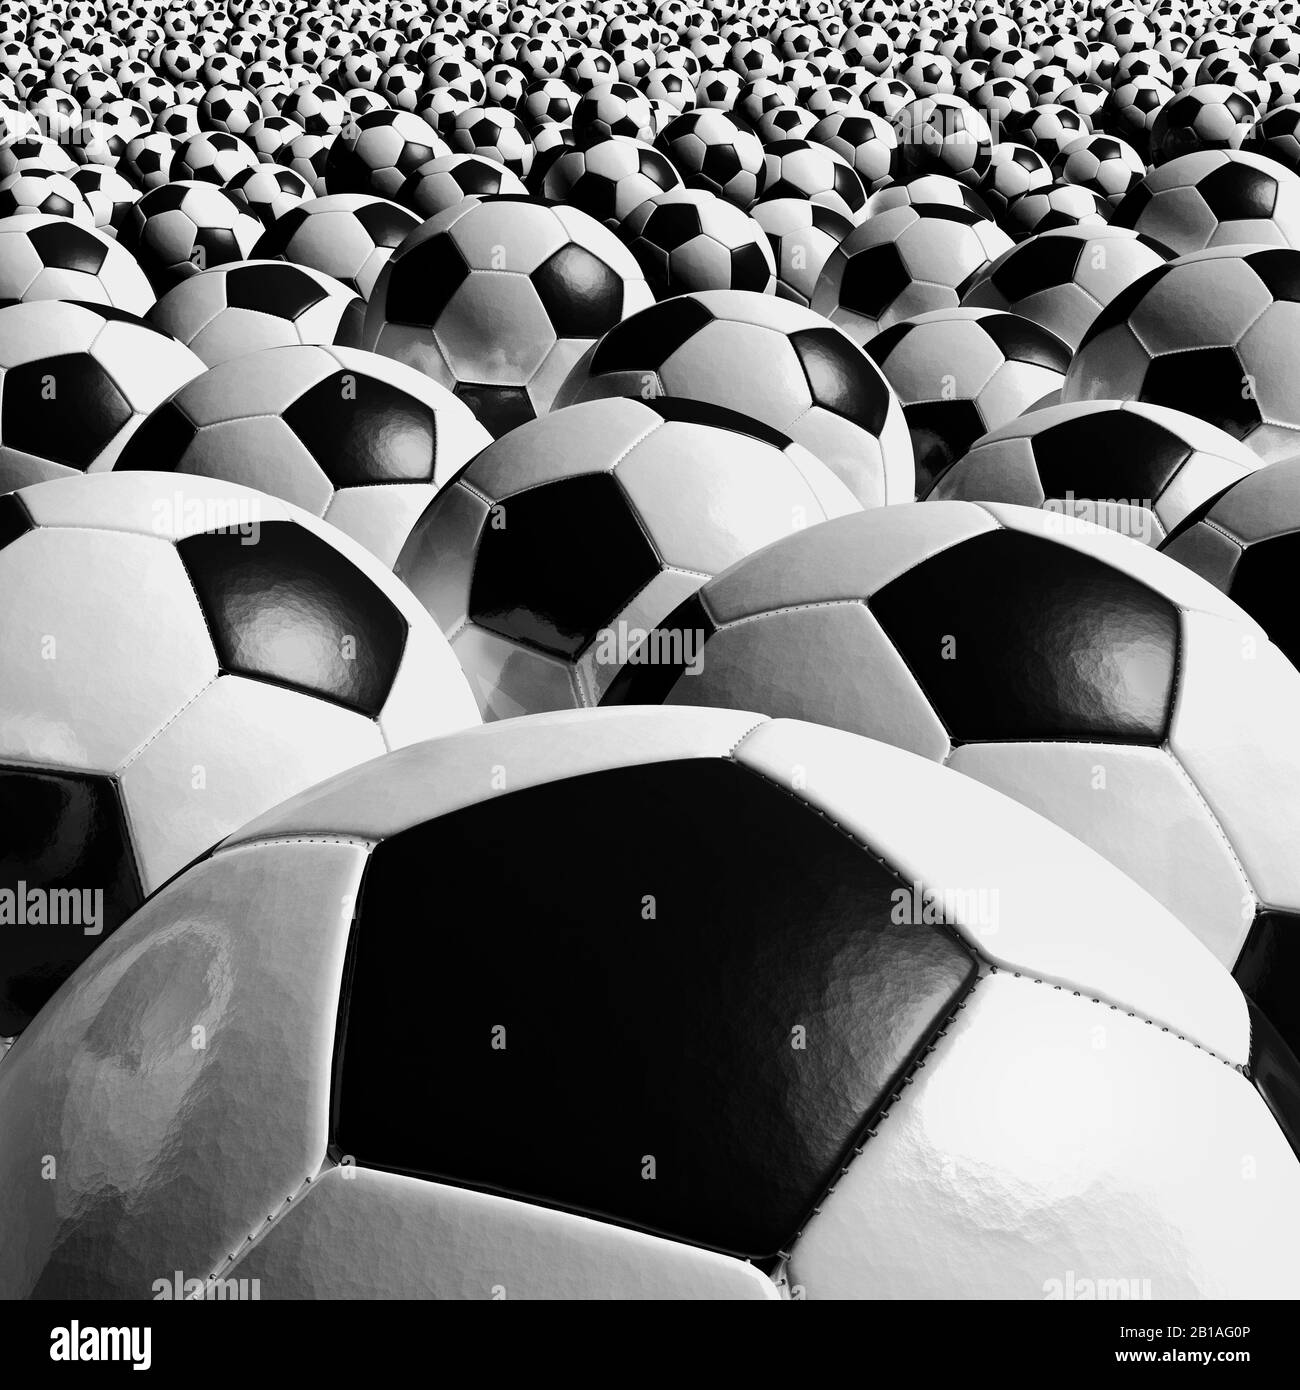 Fußball-Bälle schließen sich. Traditionell schwarz-weiß, Sauber und neu. Stockfoto